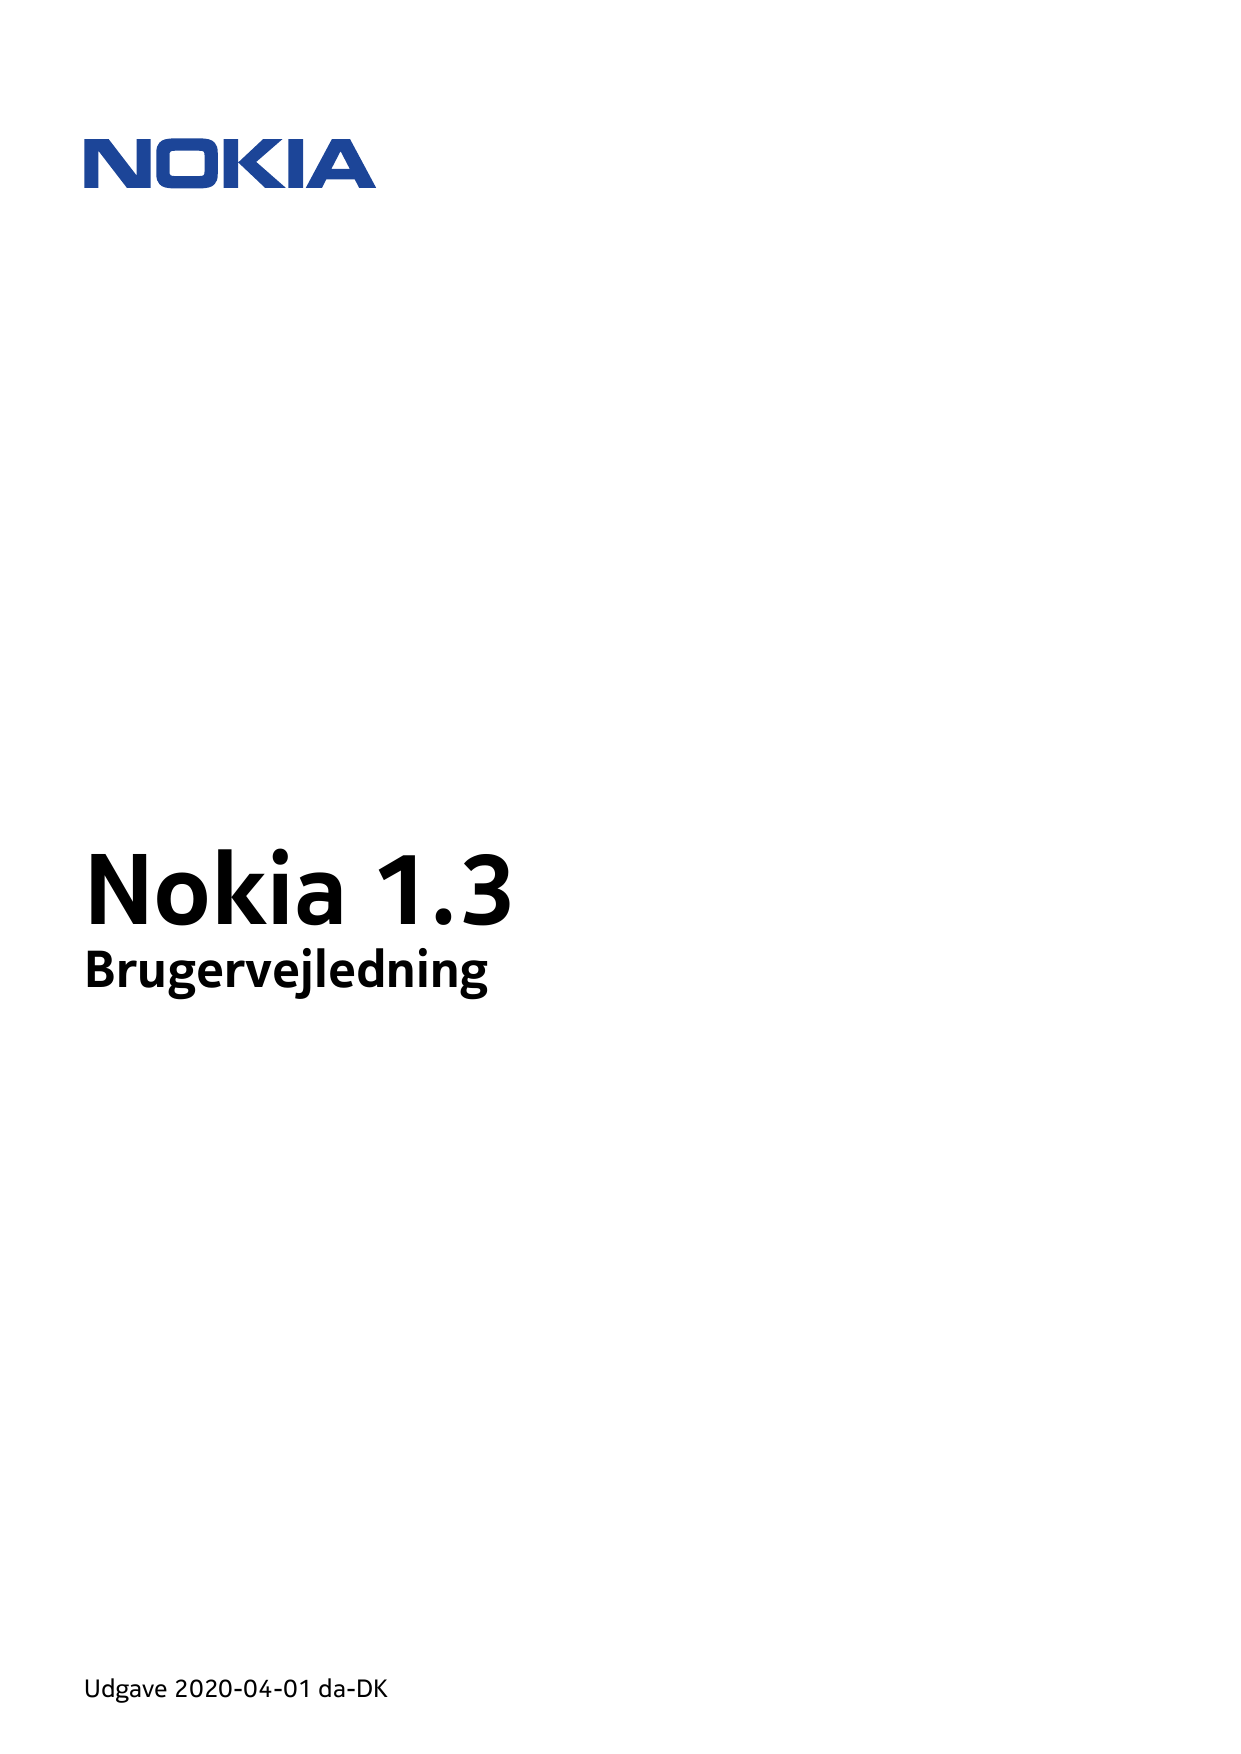 Nokia 1.3BrugervejledningUdgave 2020-04-01 da-DK